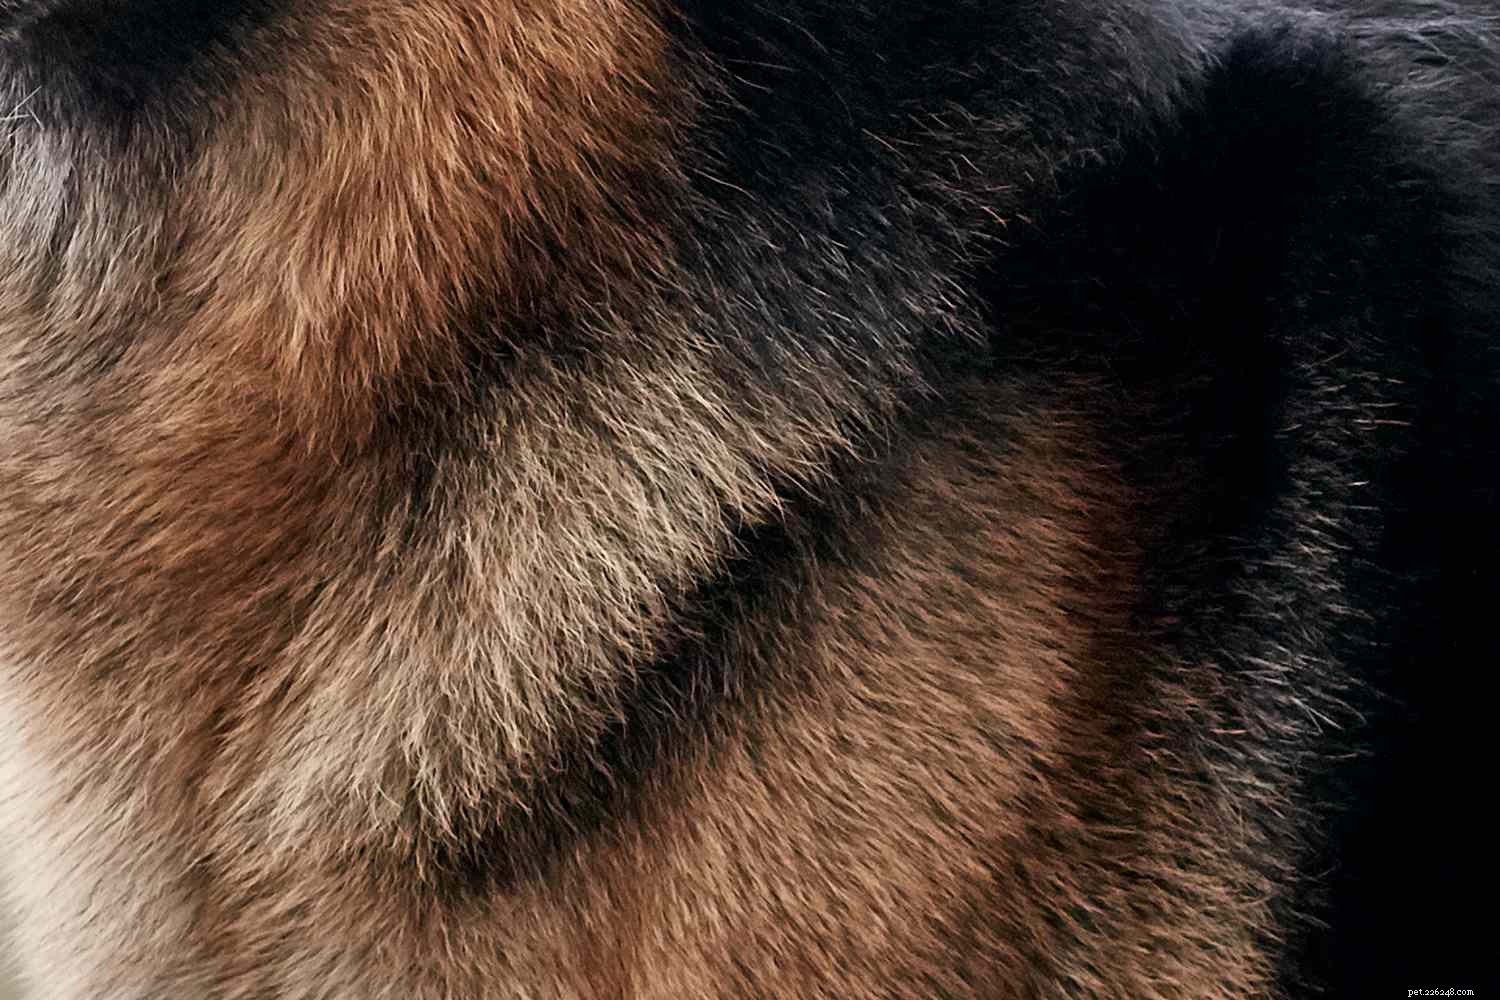 ジャーマンシェパード：犬の品種の特徴とケア 